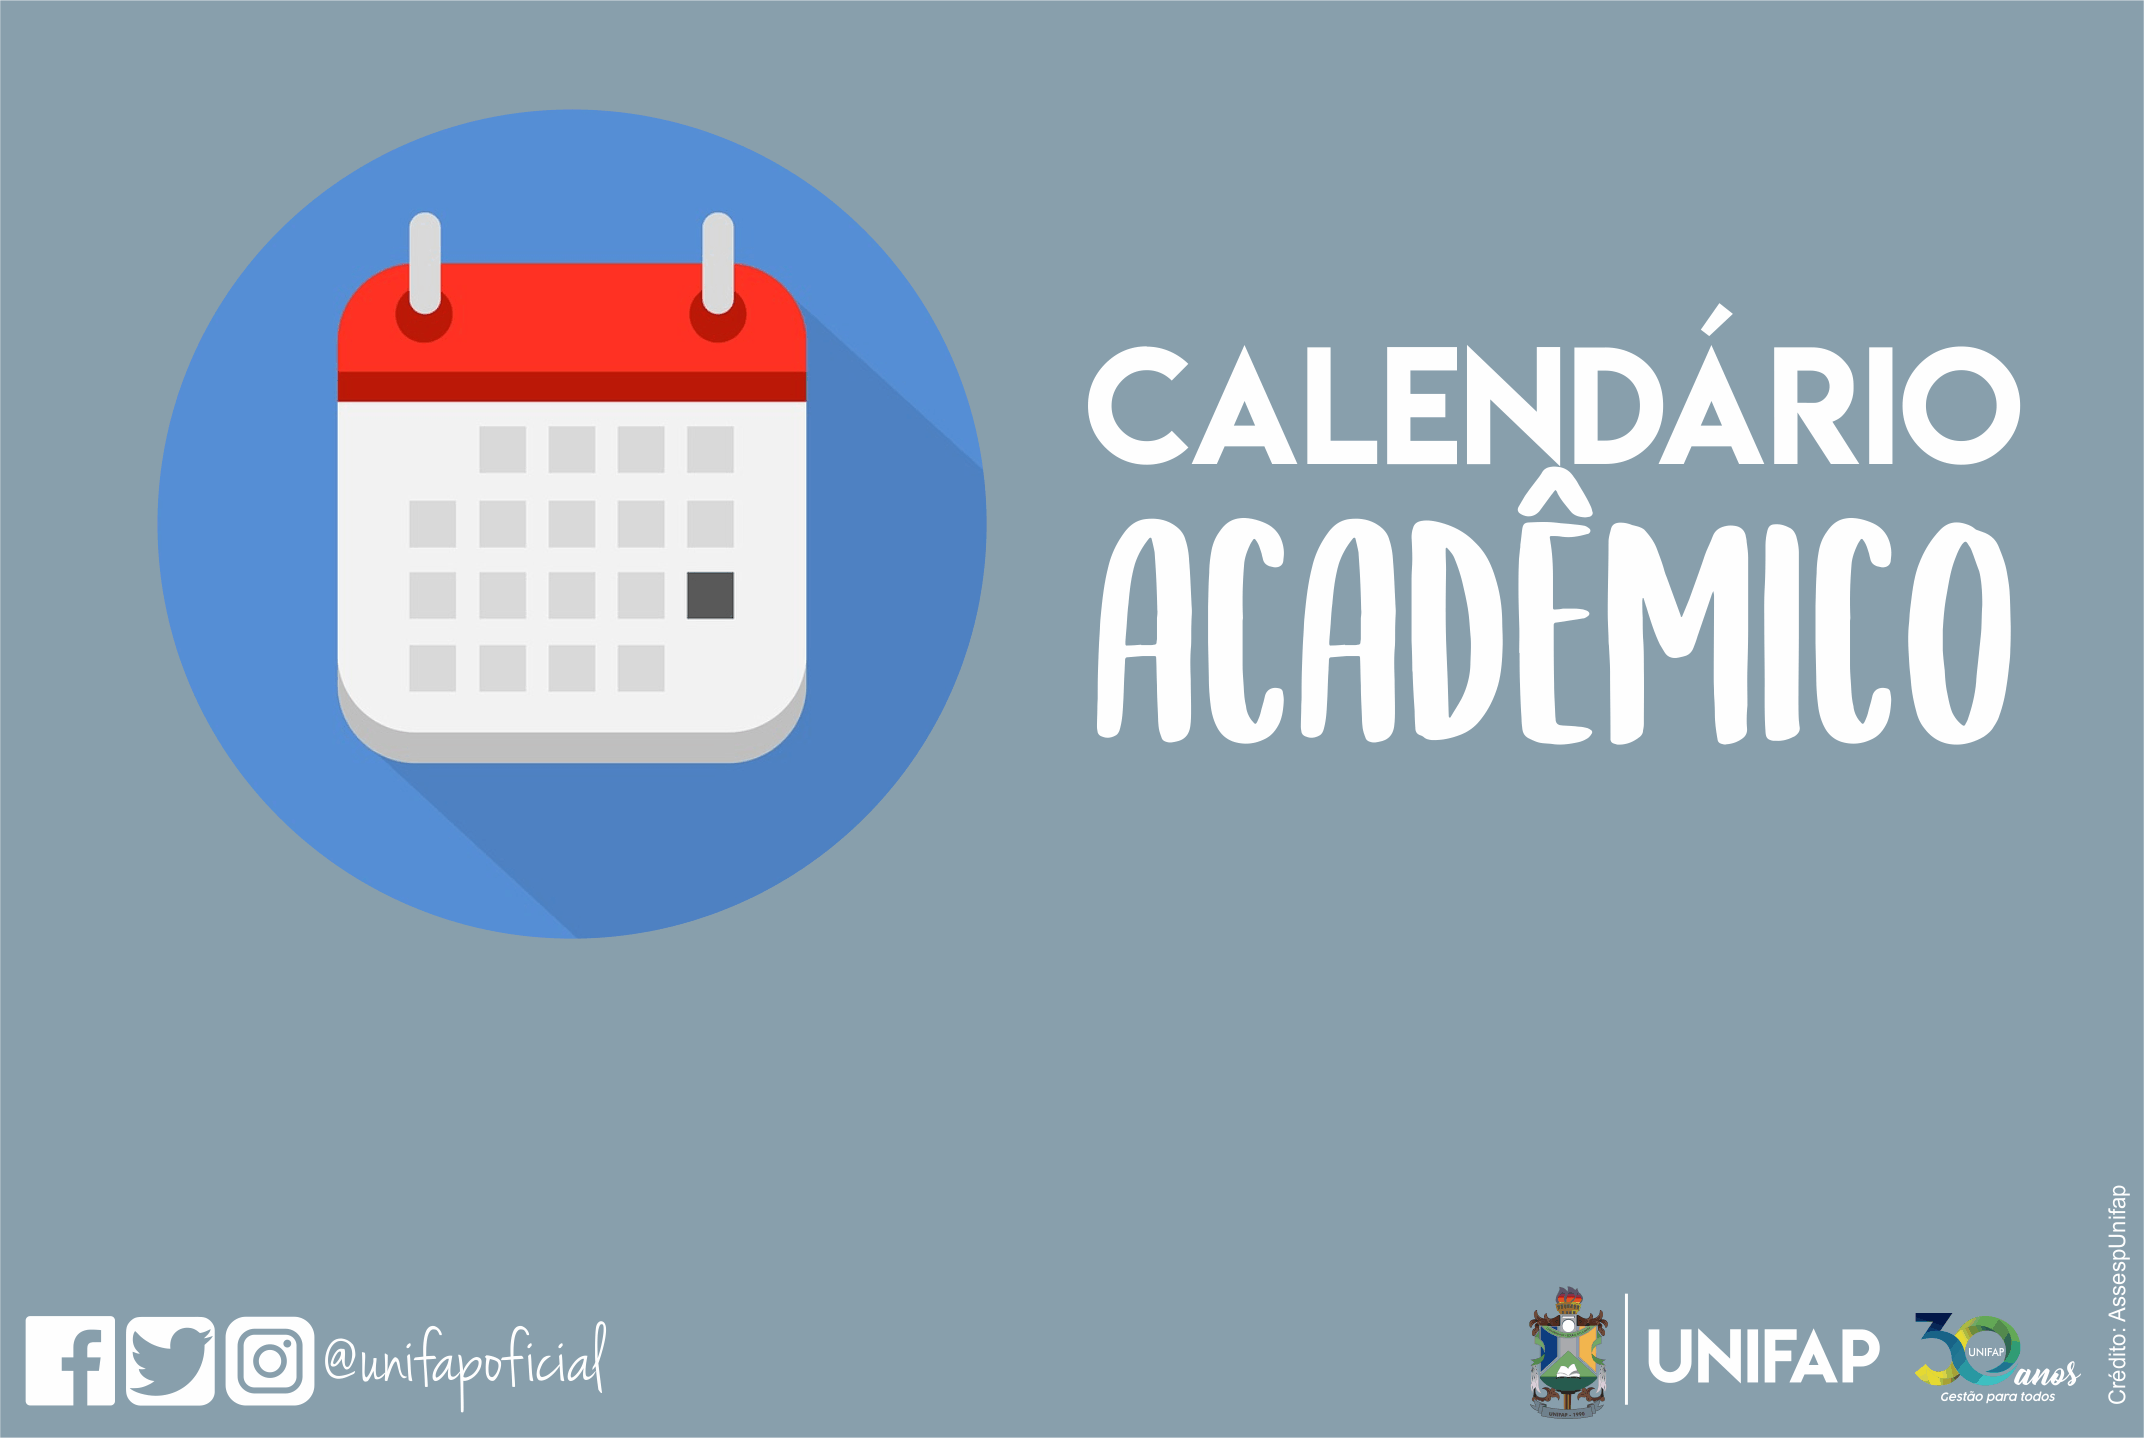 Unifap retomará calendário acadêmico com ensino híbrido a partir de abril